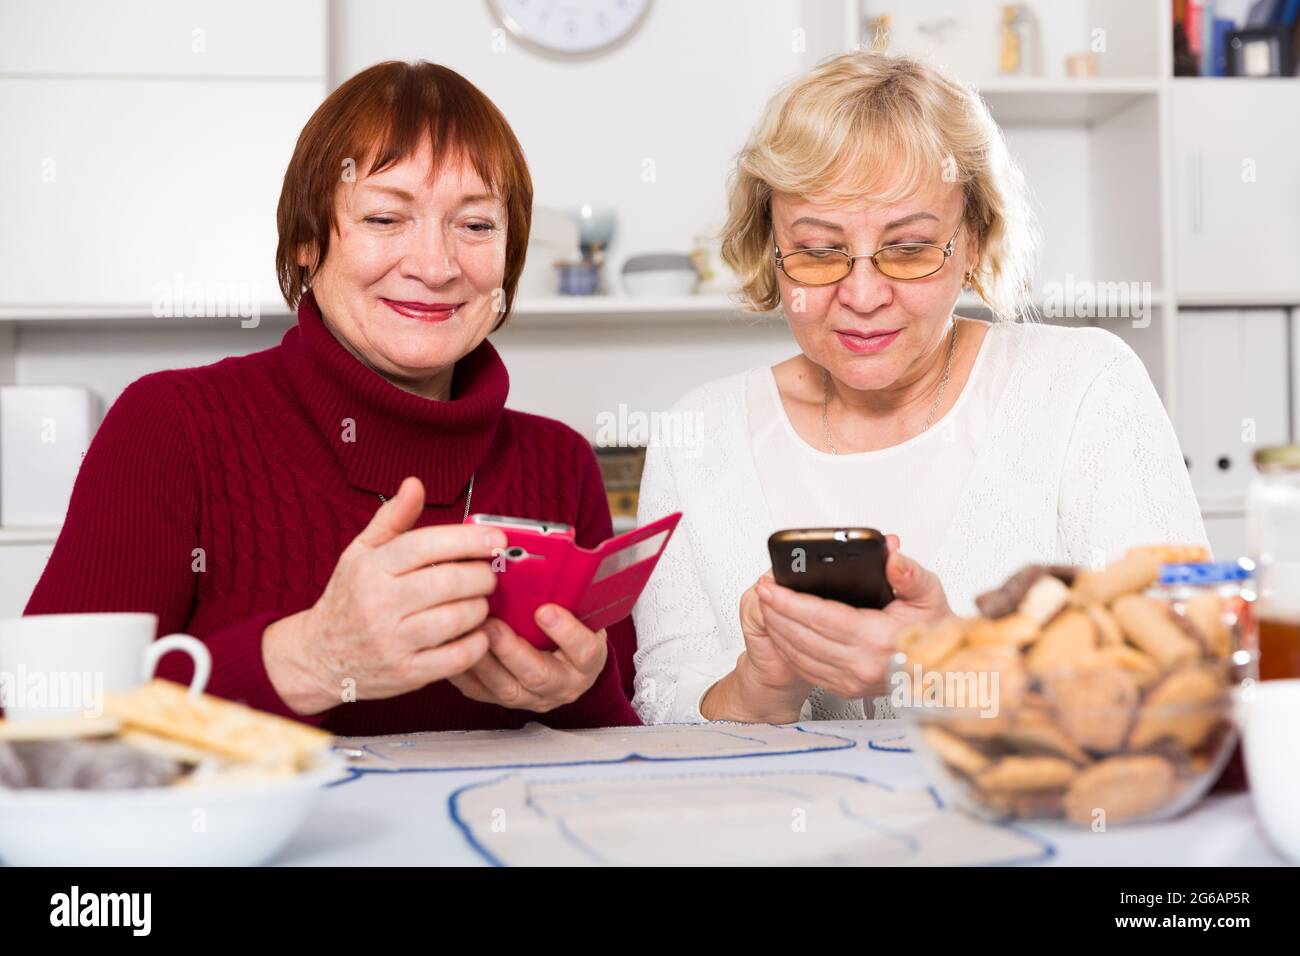 Zwei positive ältere Frauen, die Telefone benutzen Stockfoto